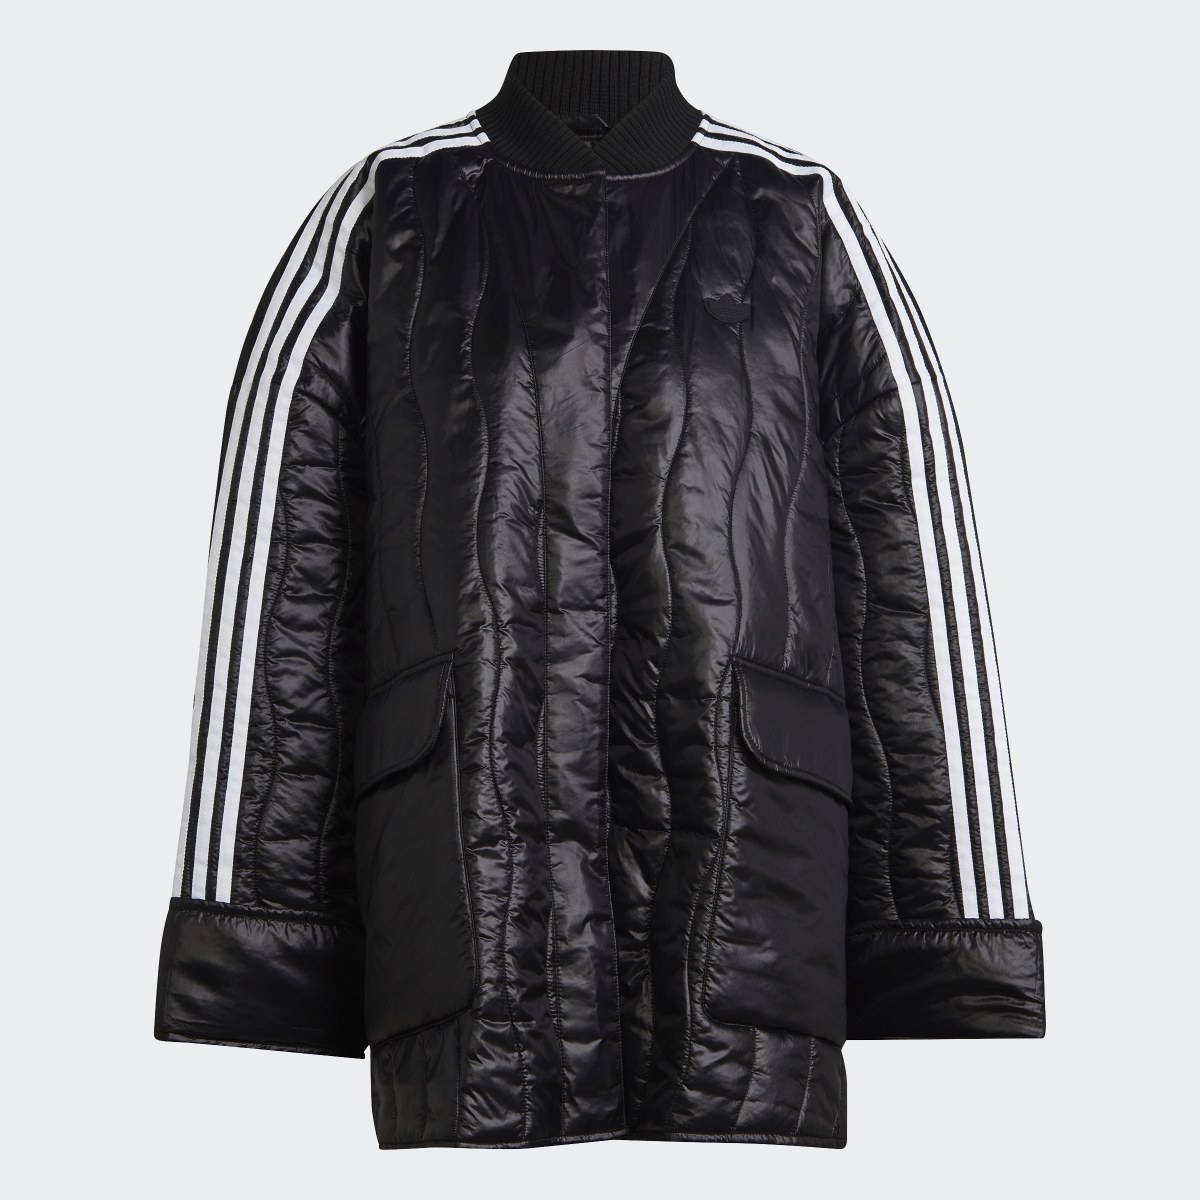 Adidas Premium Quilted Jacket. 5